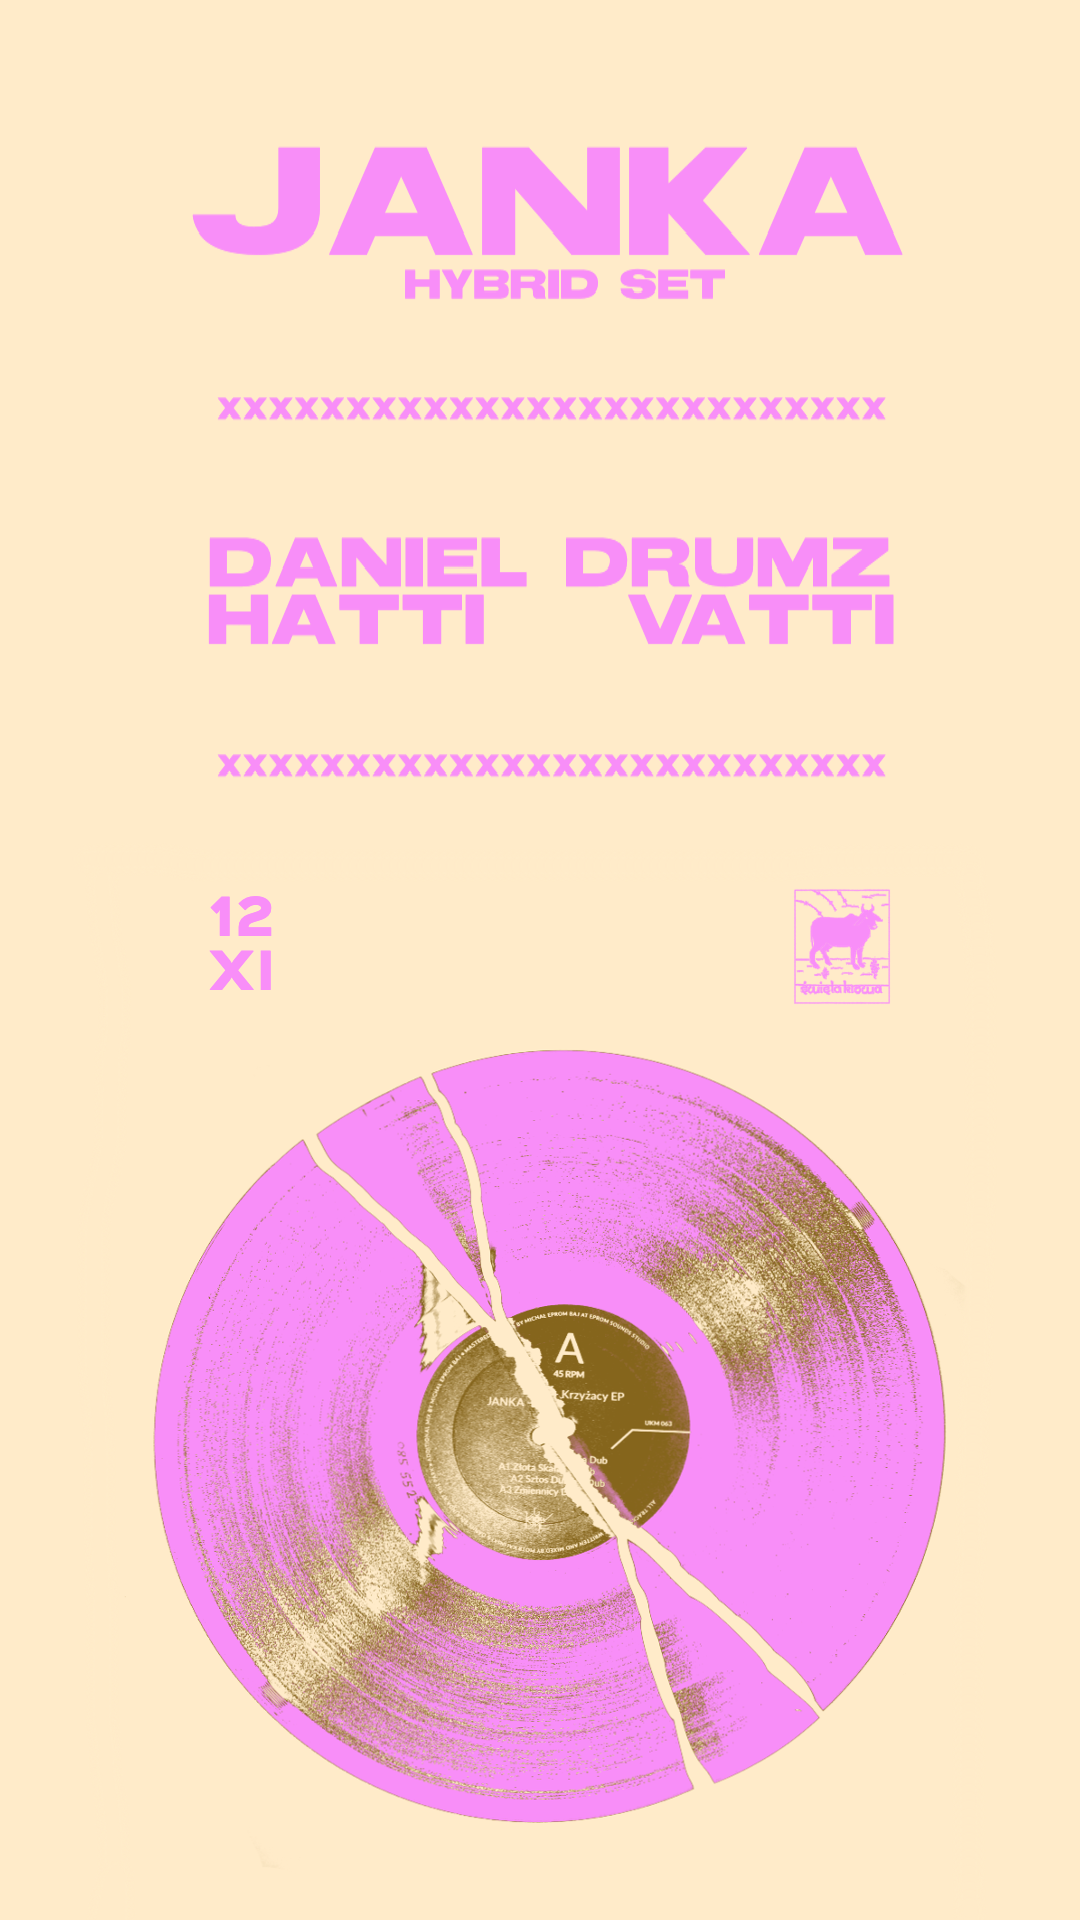 JANKA hybrid set ~ Daniel Drumz & Hatti Vatti - Página frontal